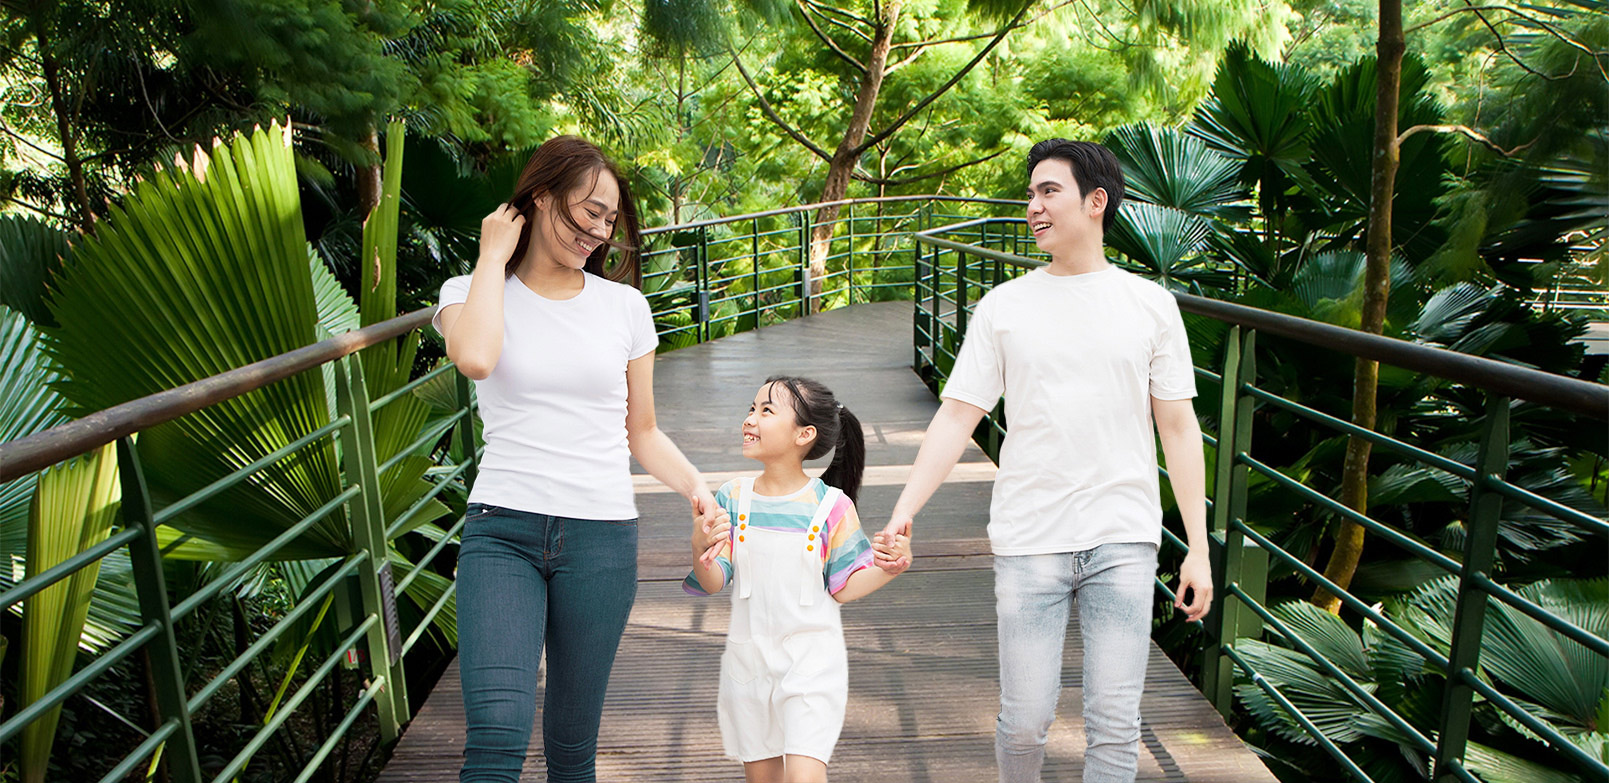 Pilihan walking trail di Singapura untuk dijelajahi bersama keluarga.